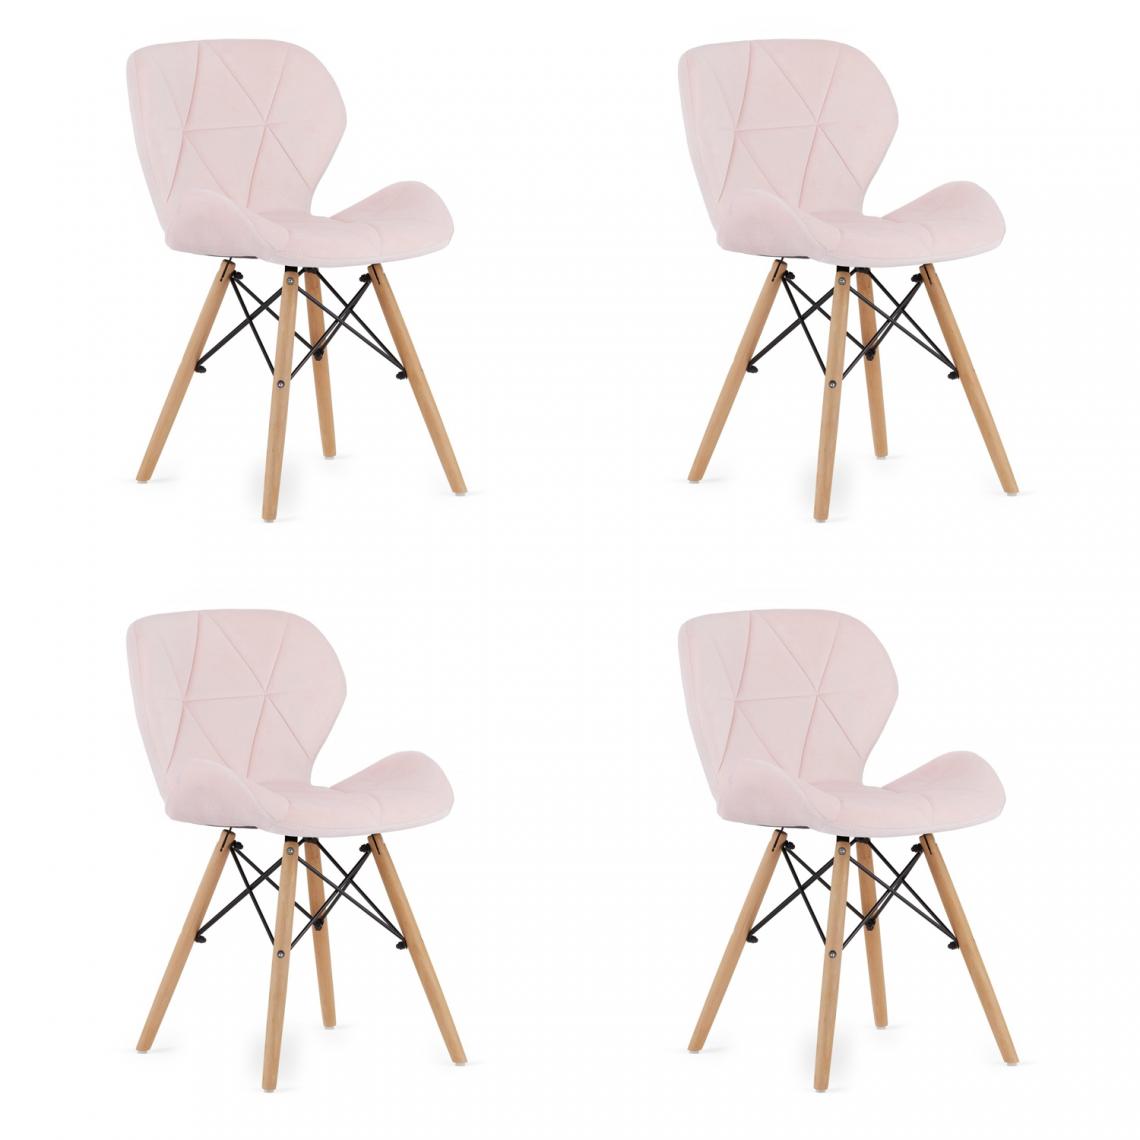 Hucoco - LAGOT - Lot de 4 chaises style glamour salon/salle à manger/bureau - 74x48x43 cm - Chaise de salle à manger - Rose - Chaises